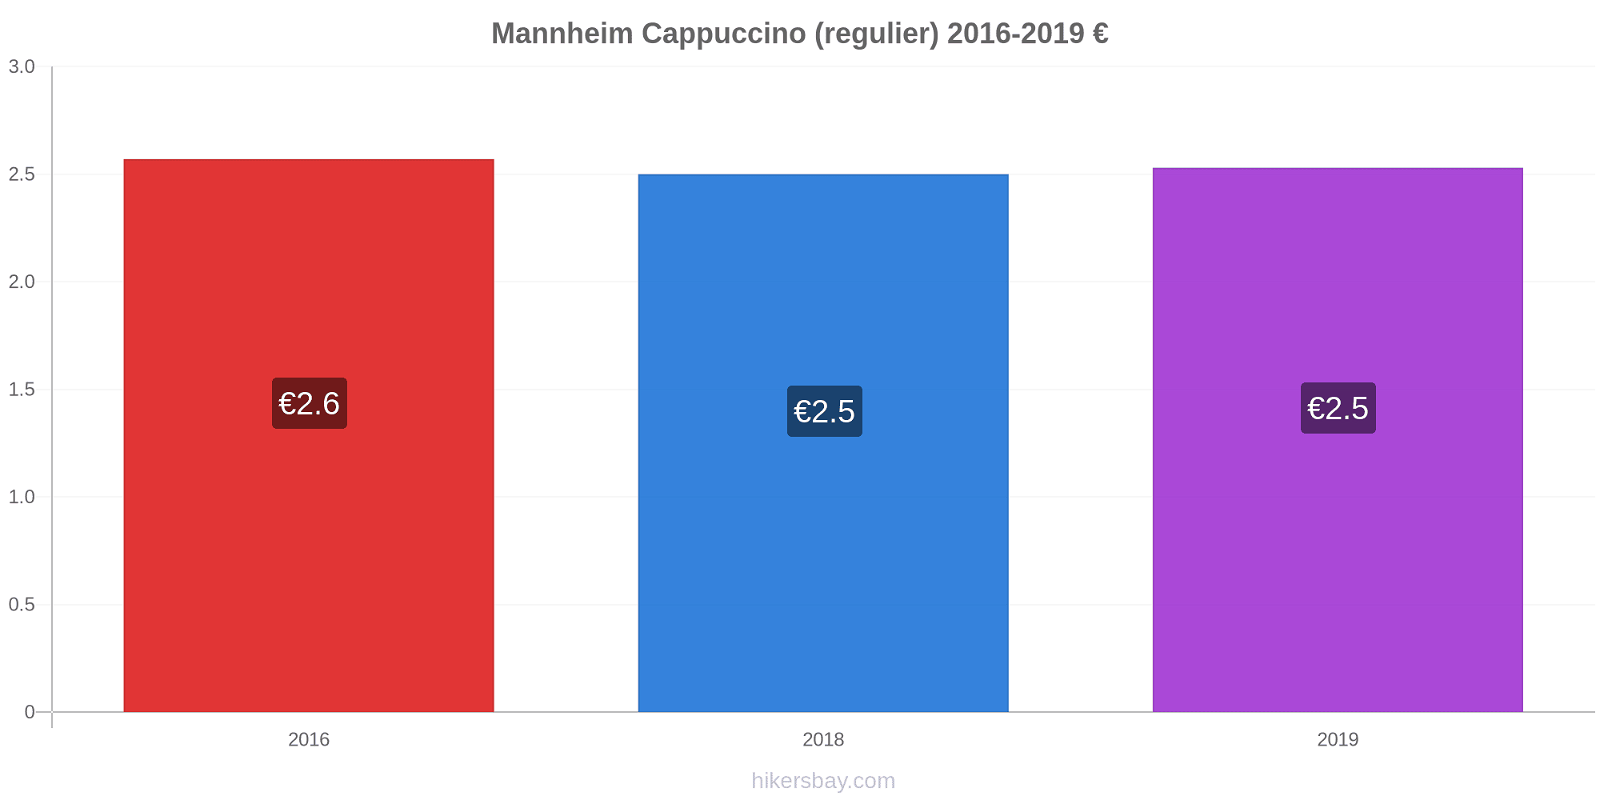 Mannheim prijswijzigingen Cappuccino (regelmatige) hikersbay.com